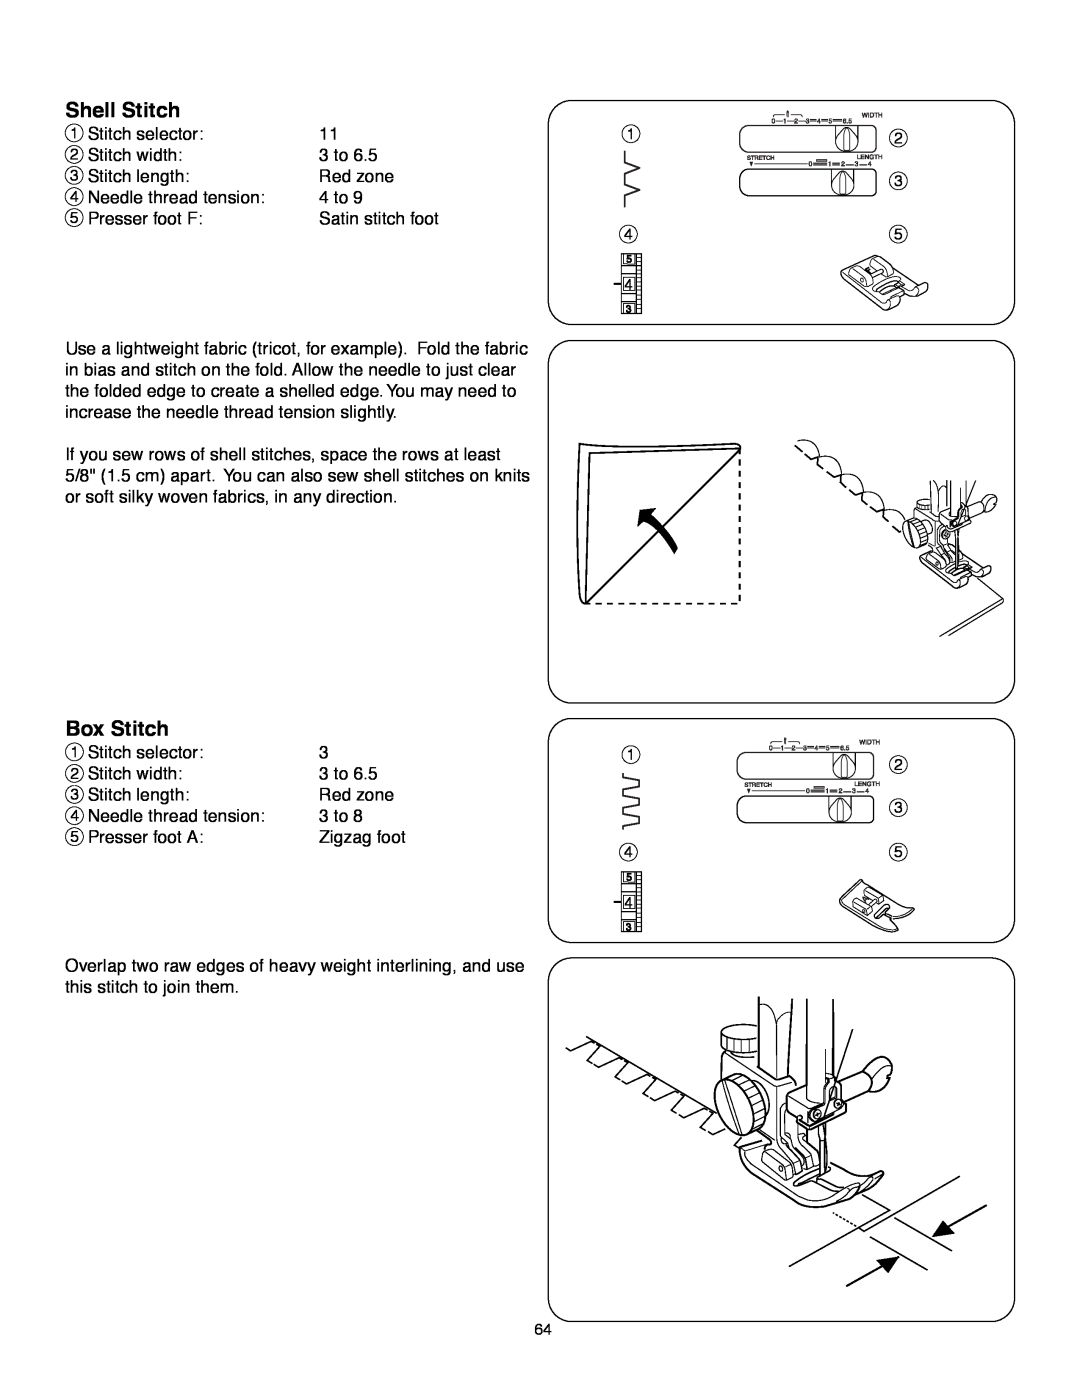 Janome MS-5027 instruction manual Shell Stitch, Box Stitch 